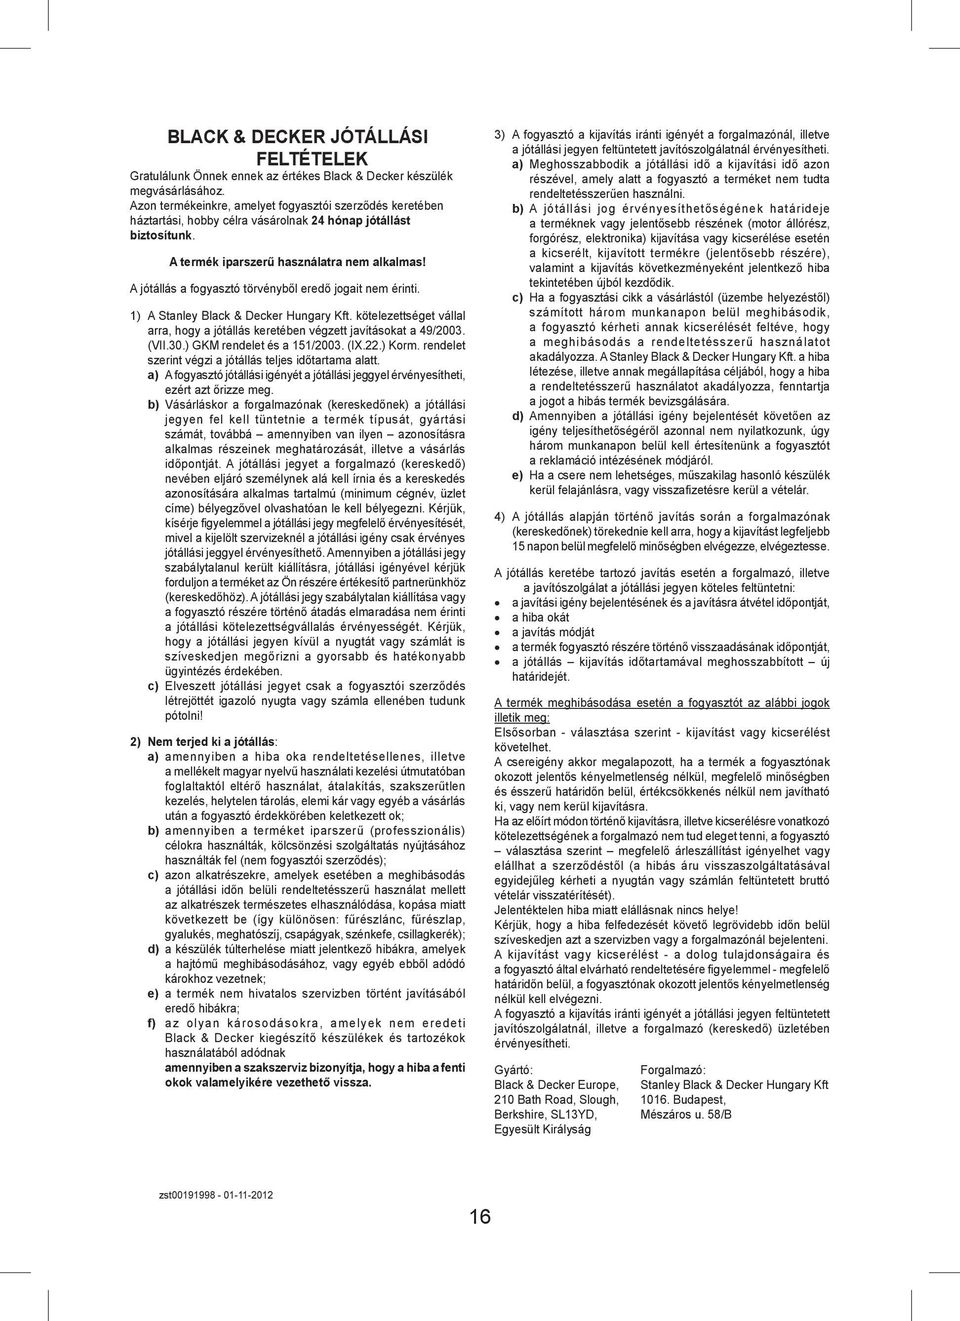 A jótállás a fogyasztó törvényből eredő jogait nem érinti. 1) A Stanley Black & Decker Hungary Kft. kötelezettséget vállal arra, hogy a jótállás keretében végzett javításokat a 49/2003. (VII.30.